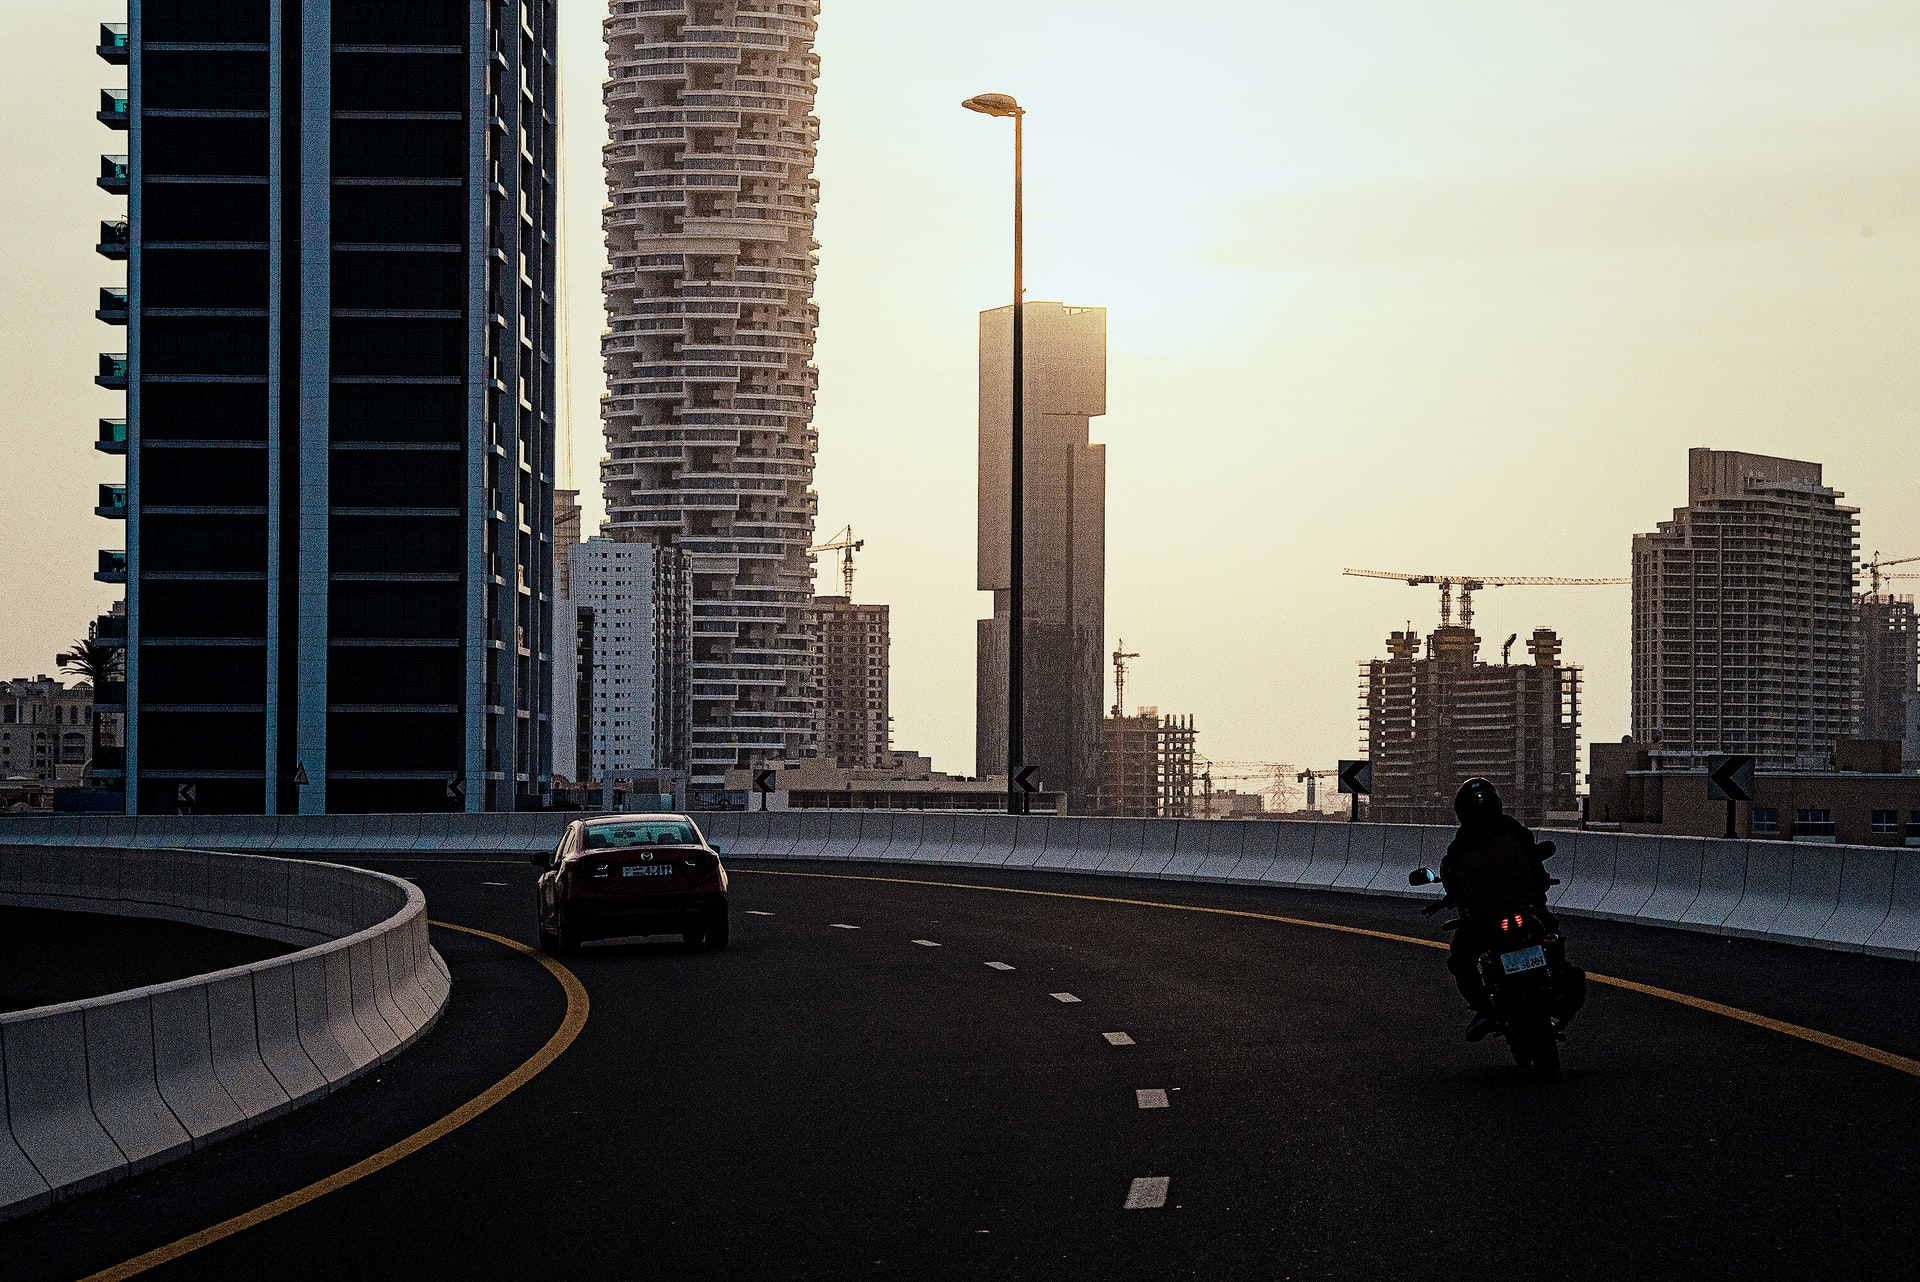 Dubai road